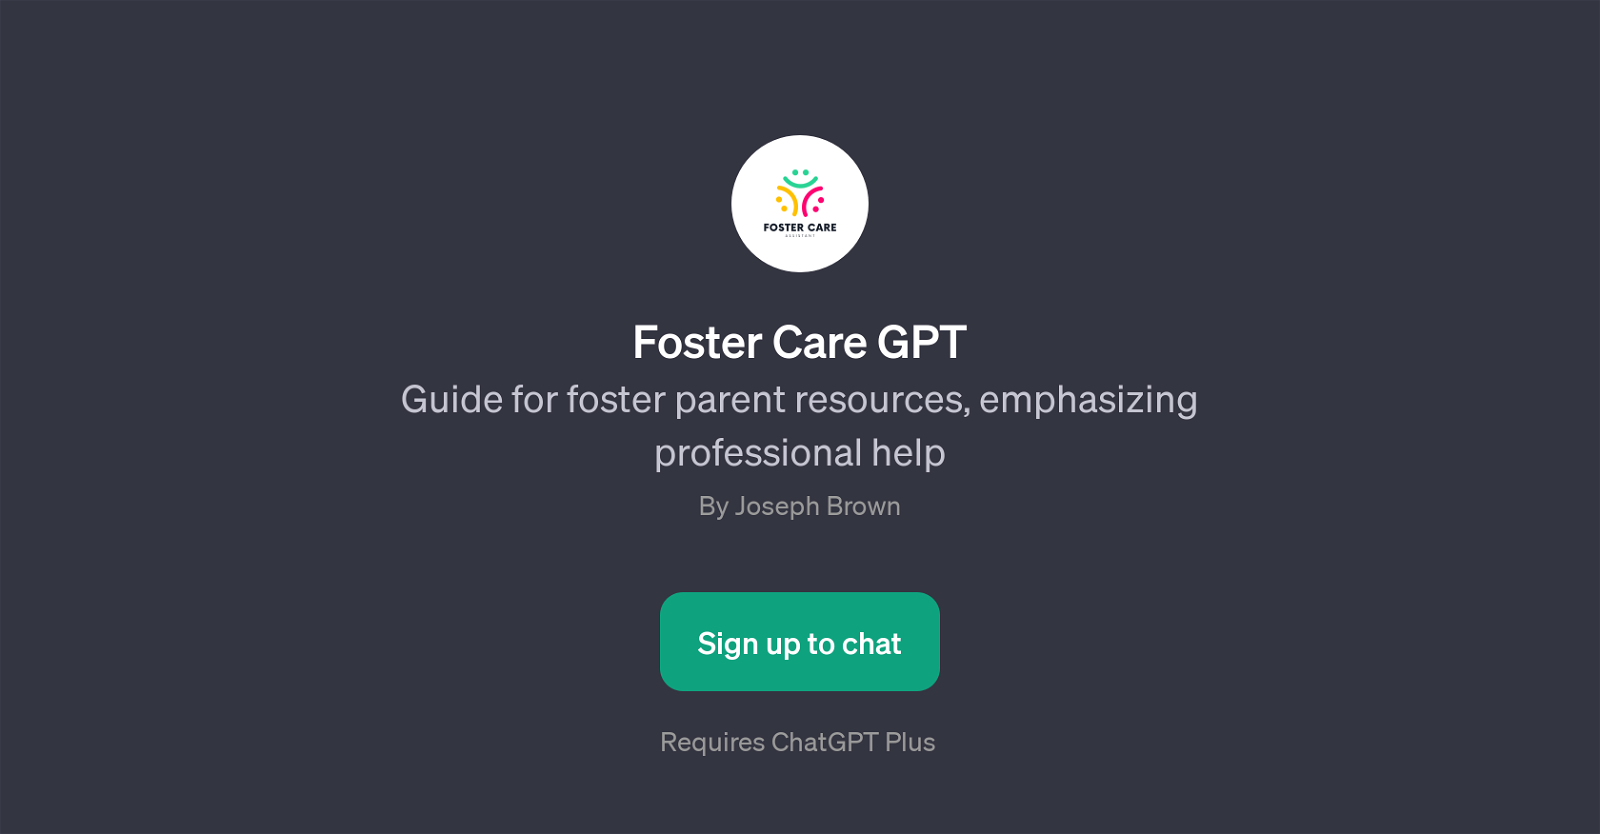 Foster Care GPT website